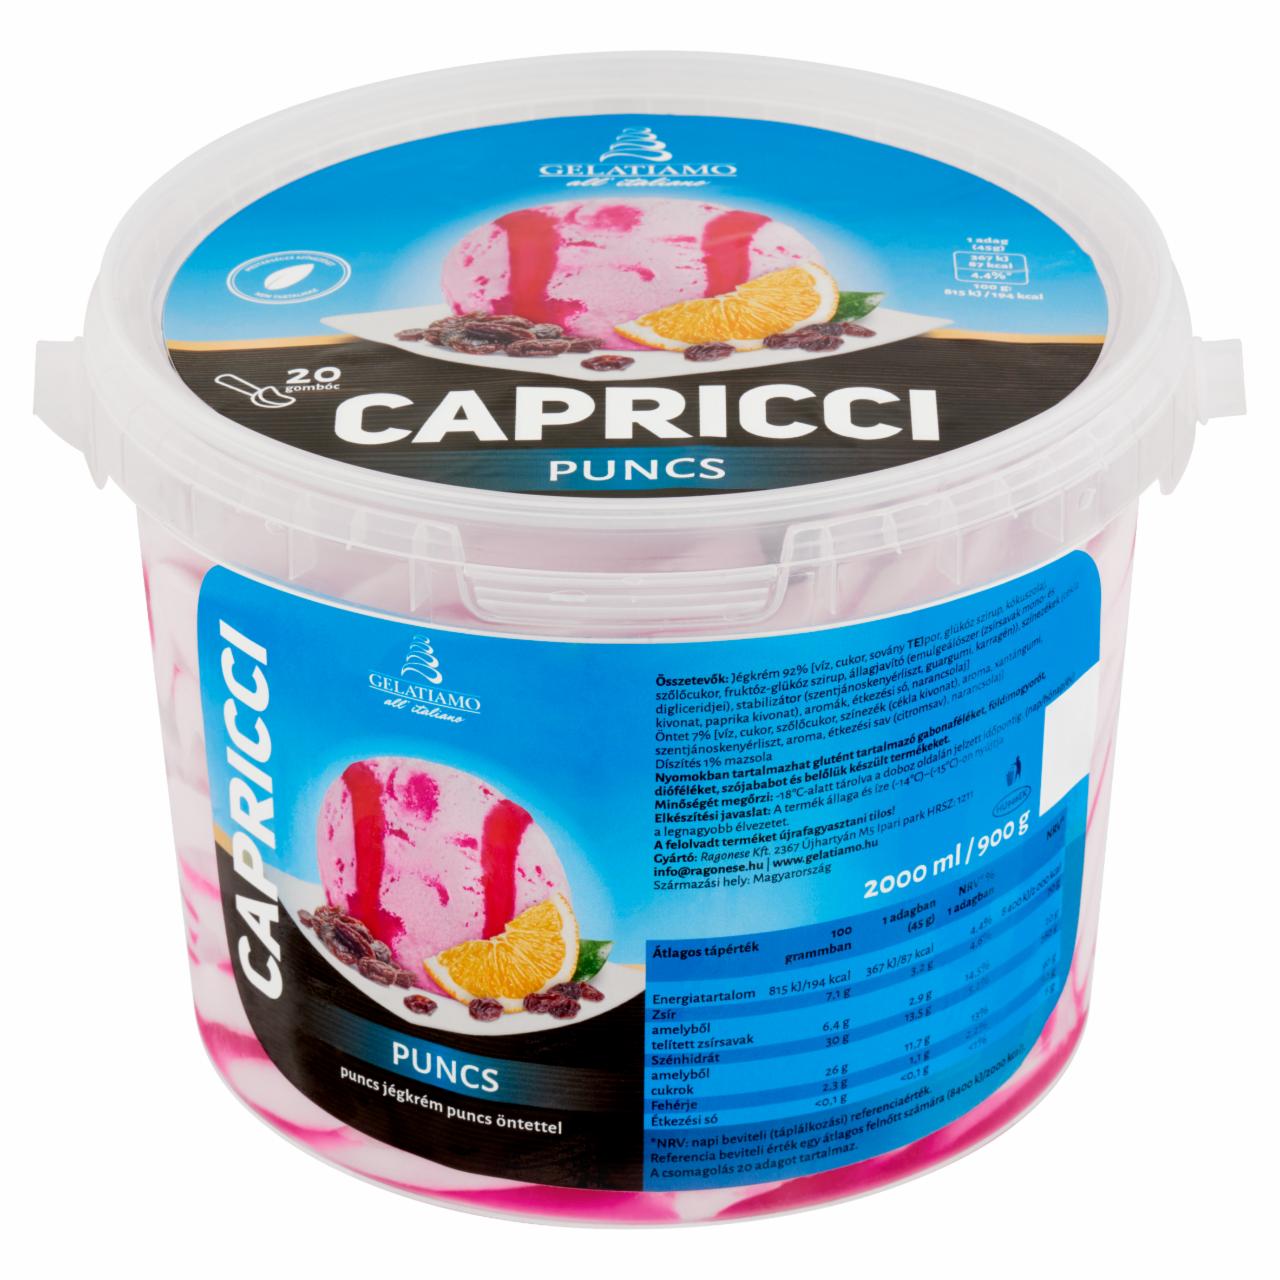 Képek - Gelatiamo Capricci puncs jégkrém puncs öntettel 2000 ml